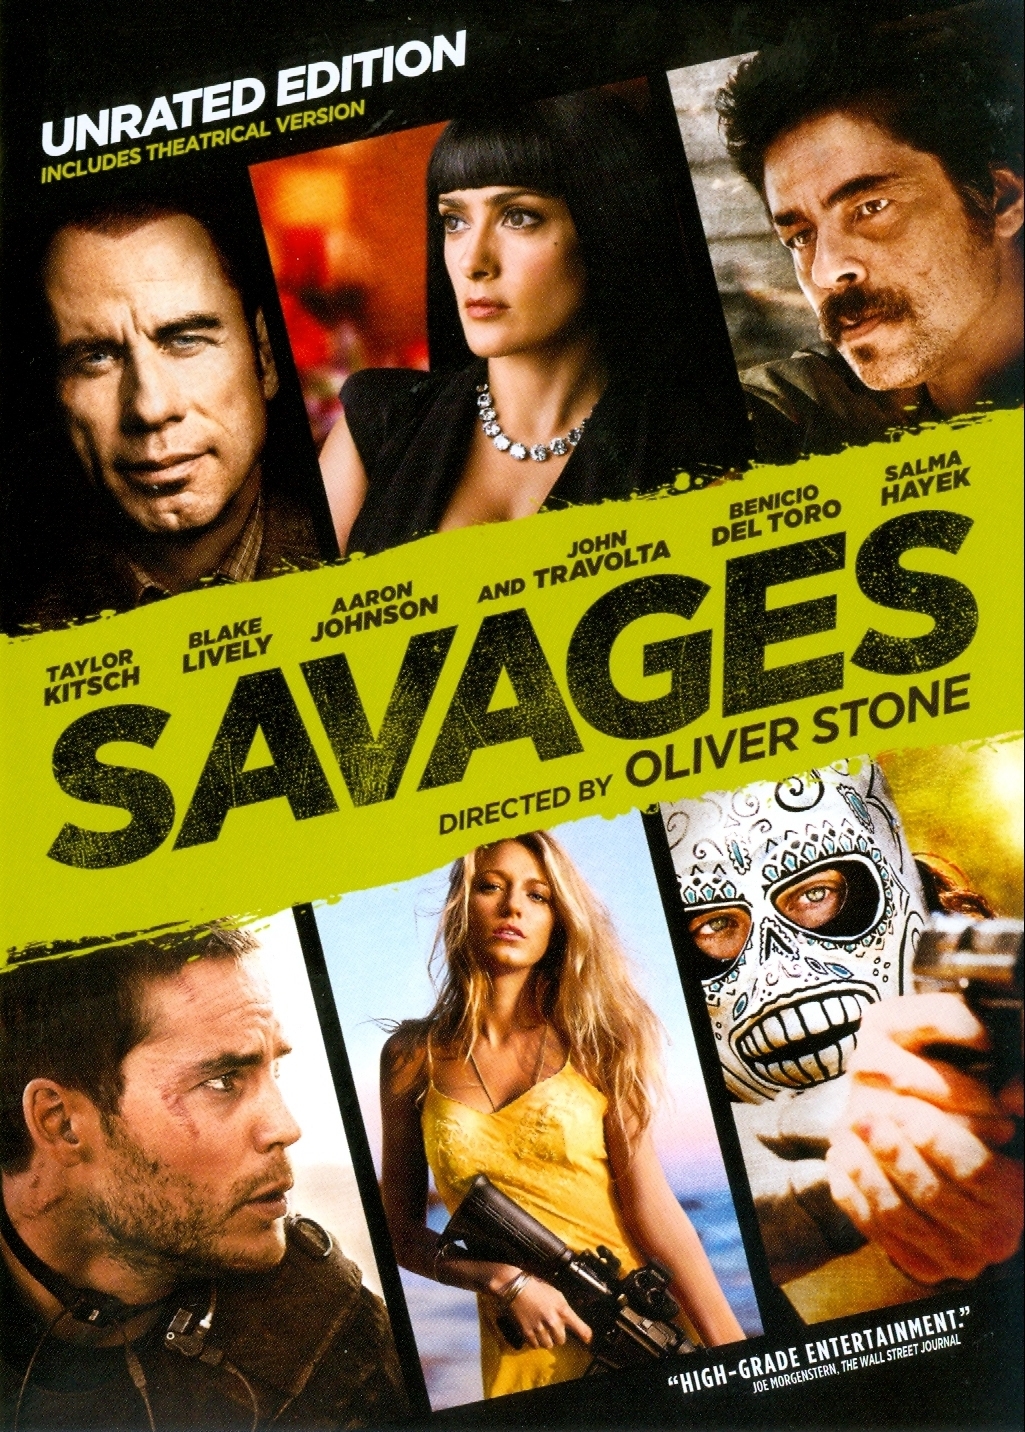 جان تراولتا در صحنه فیلم سینمایی Savages: The Interrogations به همراه بنیسیو دل تورو، آرون تیلور جانسون، Taylor Kitsch، بلیک لیولی و Salma Hayek